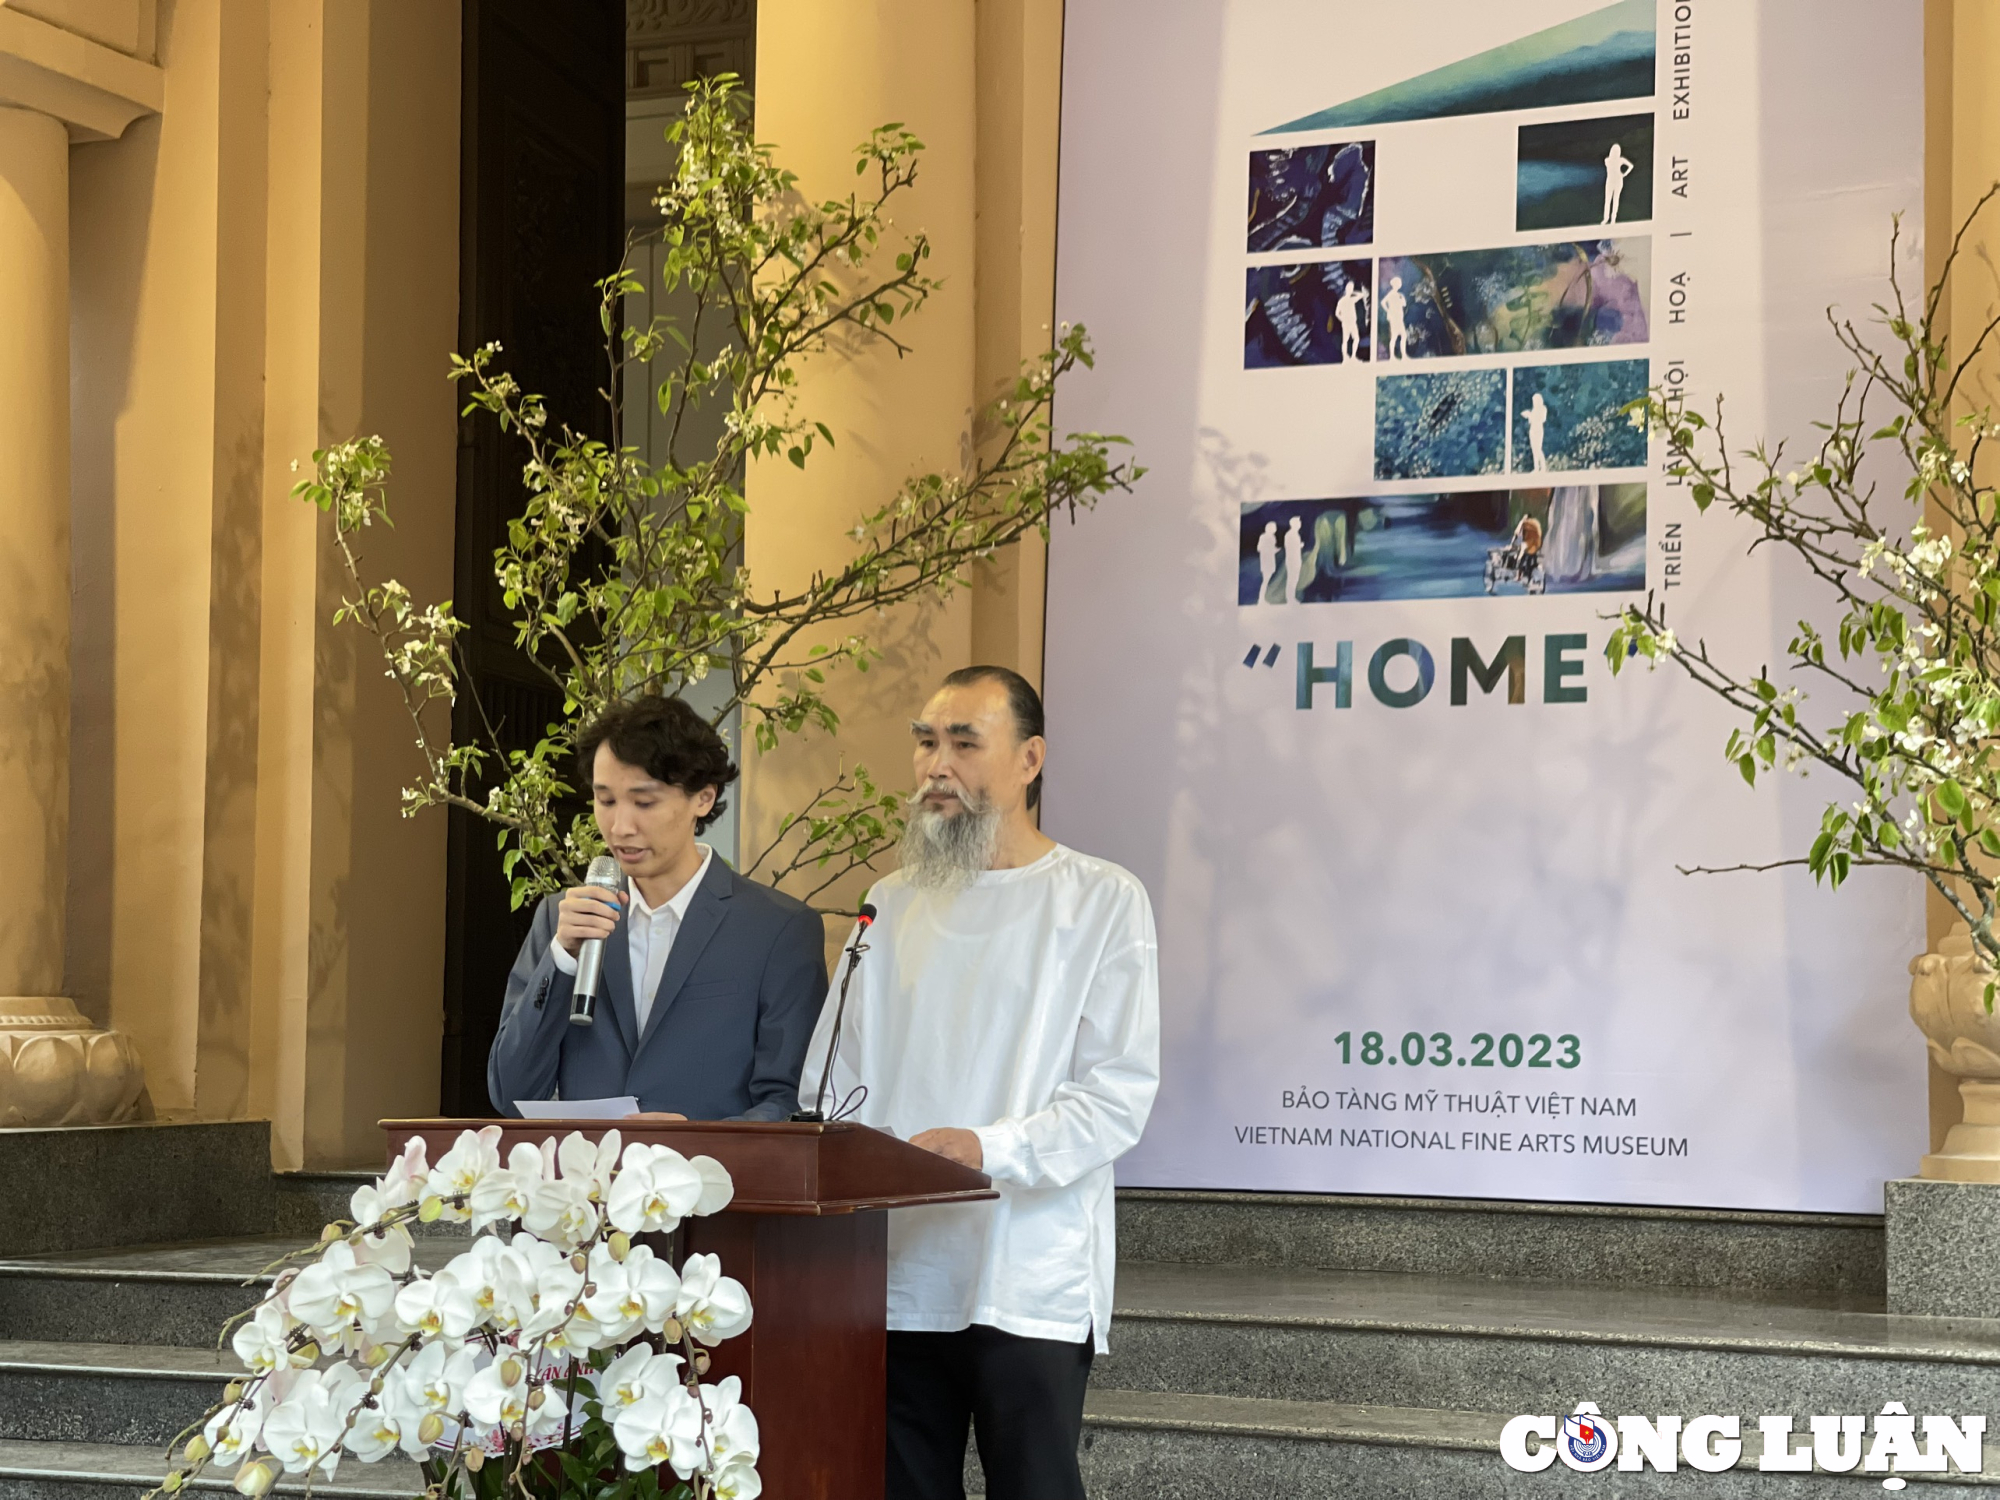 Con trai Khánh Nguyên (trái) và họa sĩ Hoàng Định tại lễ khai mạc triển lãm "HOME" diễn ra chiều 18/3 tại Bảo tàng Mỹ thuật Việt Nam.